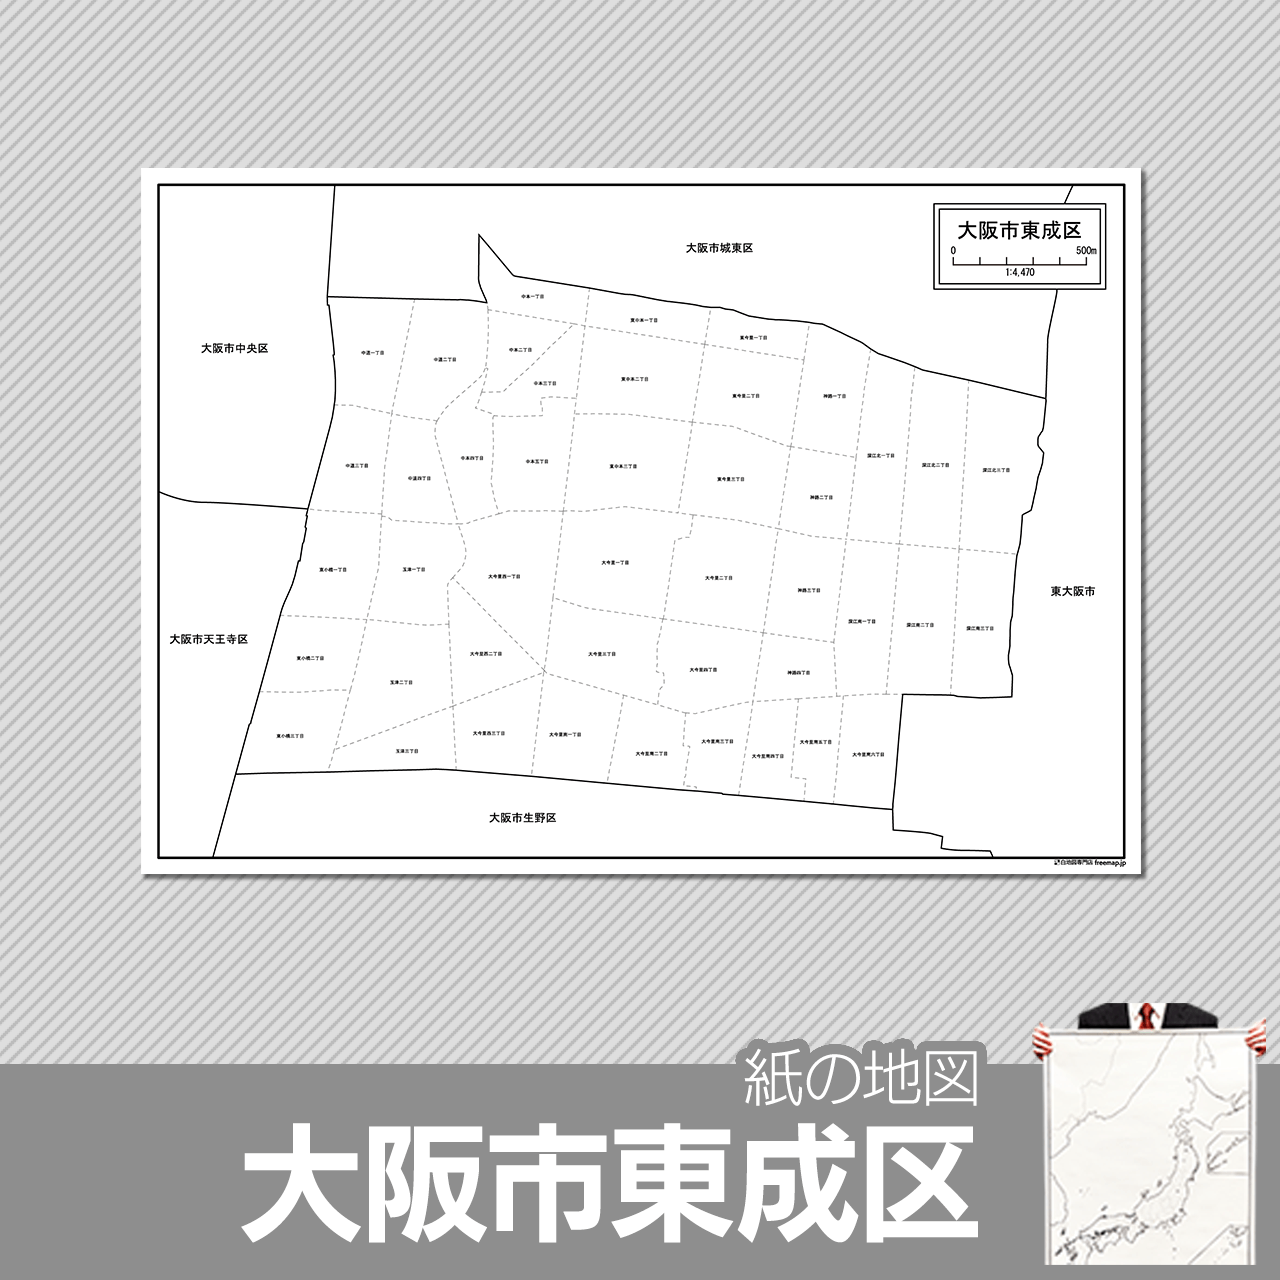 大阪市東成区の紙の白地図のサムネイル